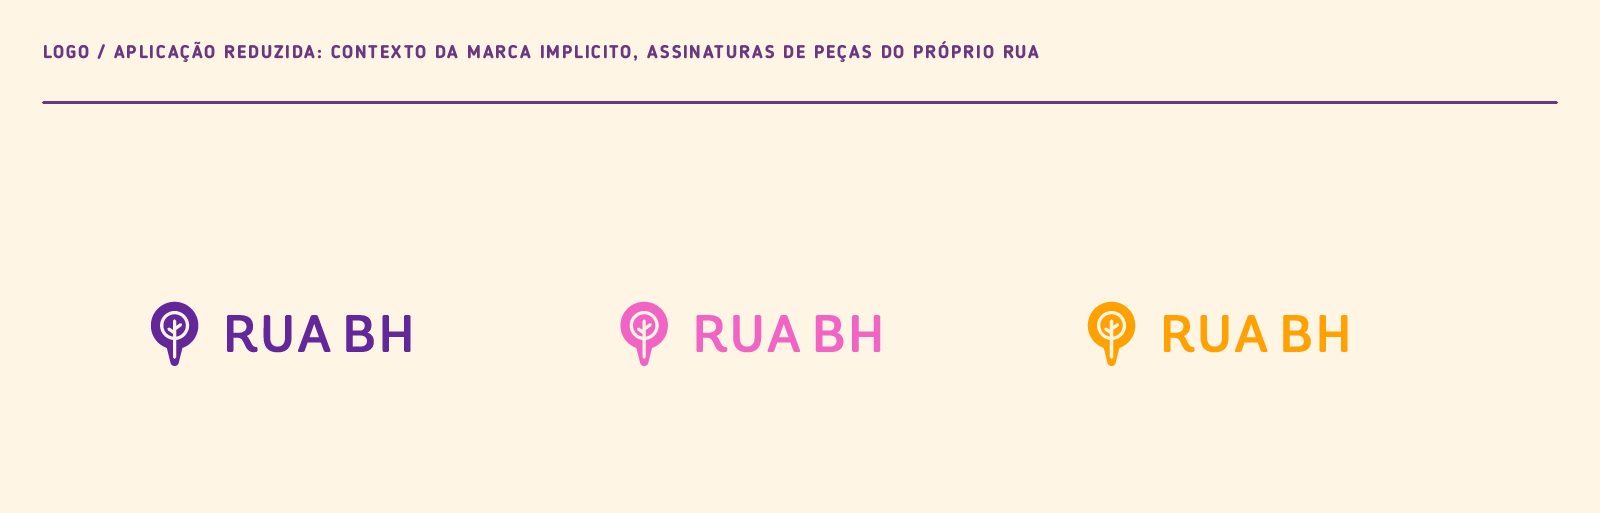 04_Rua_Behance_Logo reduzida